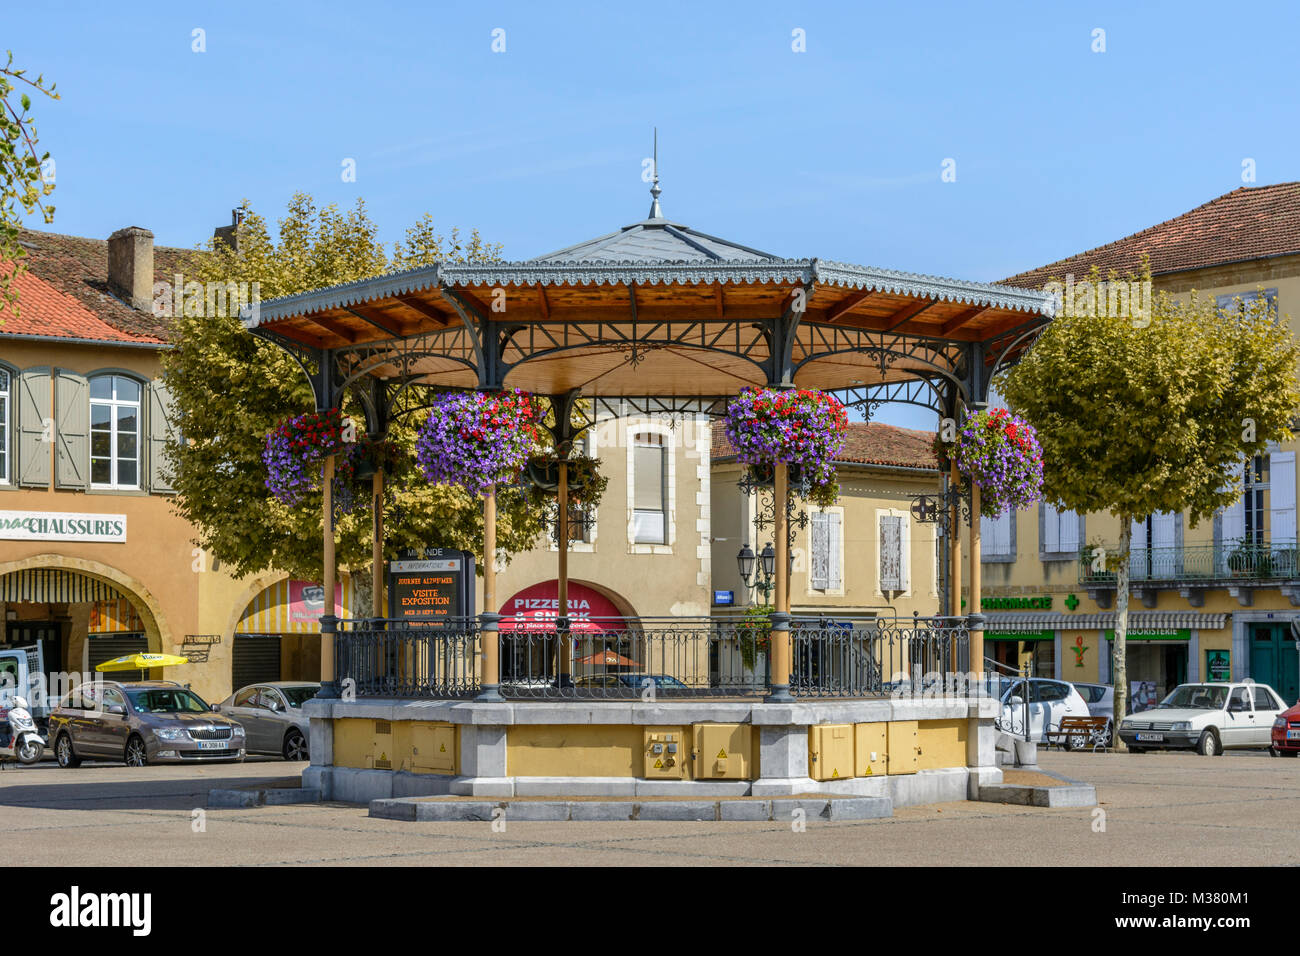 Musikpavillon mit Blumenschmuck in Place d'Astarac, Mirande, Gers (Gascogne), Occitanie (Midi-Pyrénées), im Südwesten von Frankreich Stockfoto